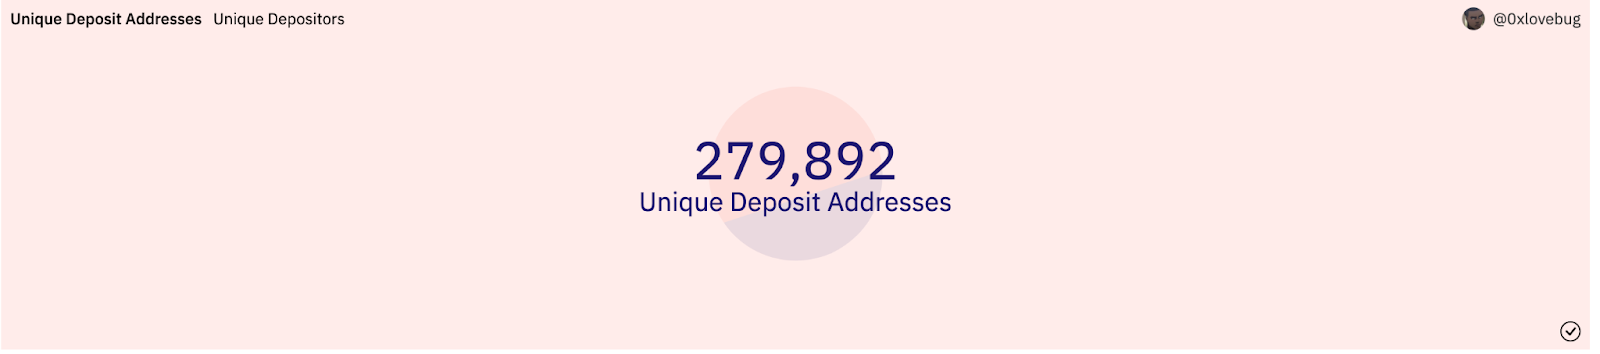 Arbitrum Unique Deposit Addresses